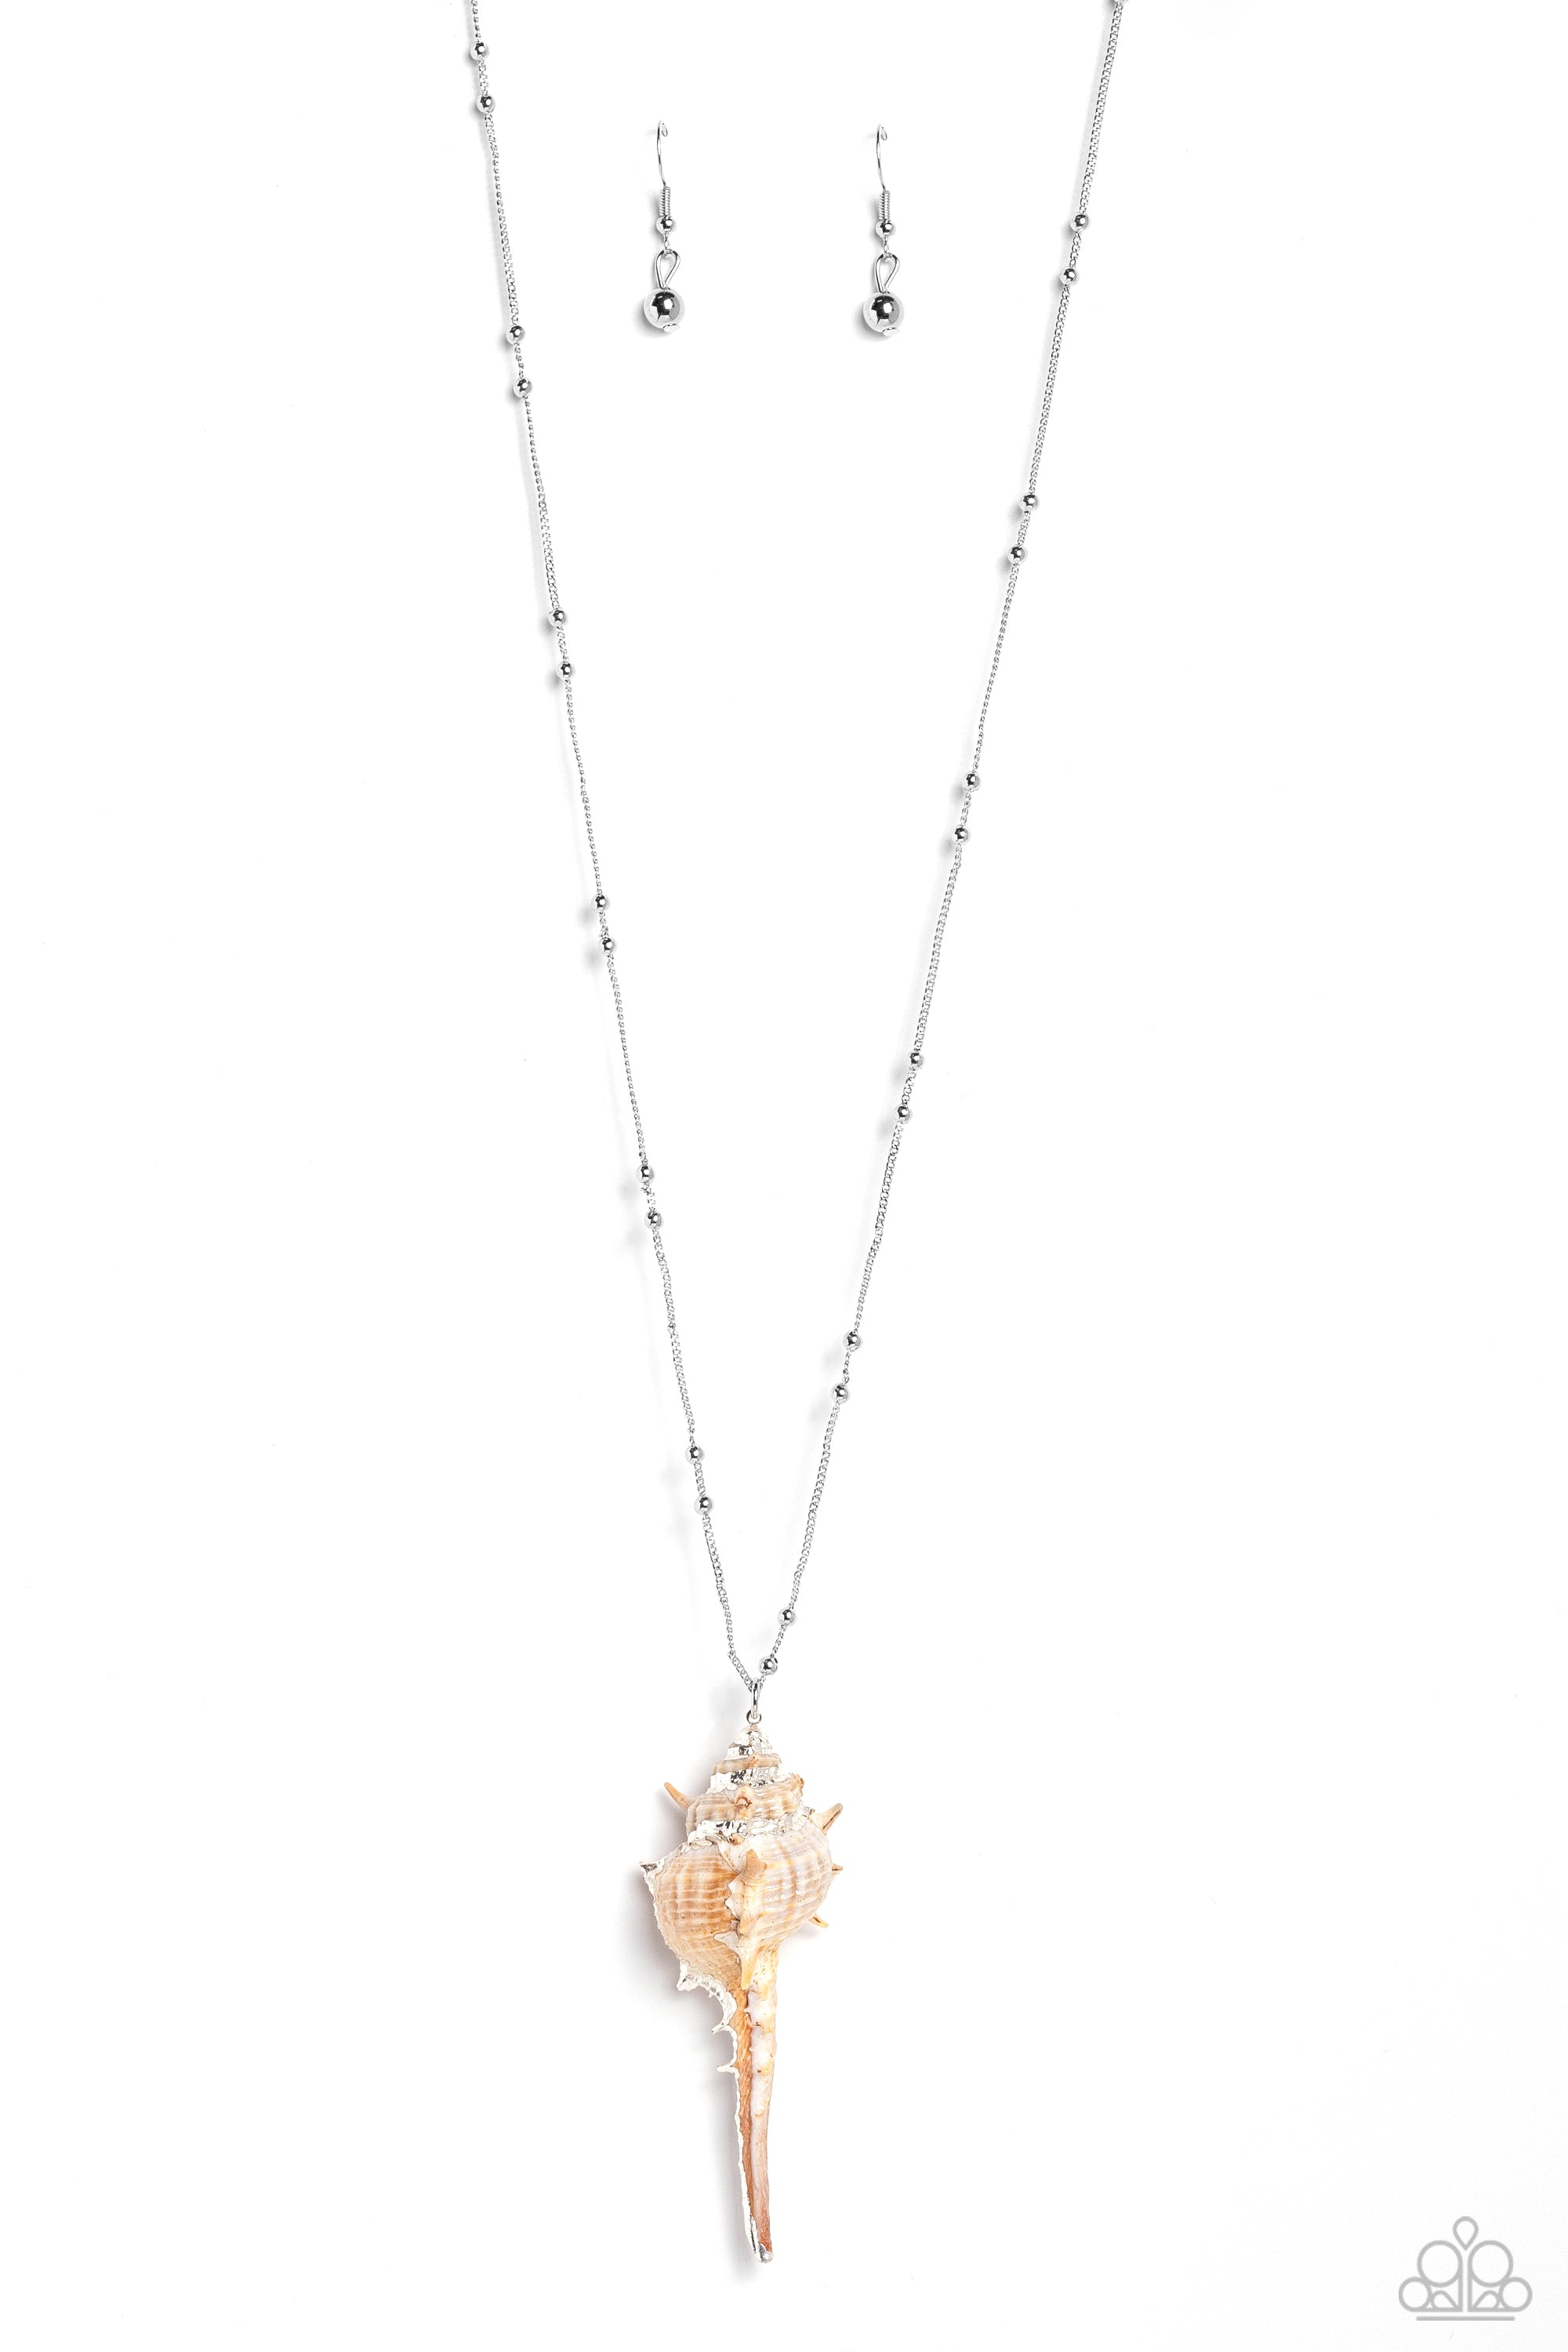 Paparazzi Necklace- Downstage Dazzle- White Crystal Like Beads- White  Rhinestone | eBay